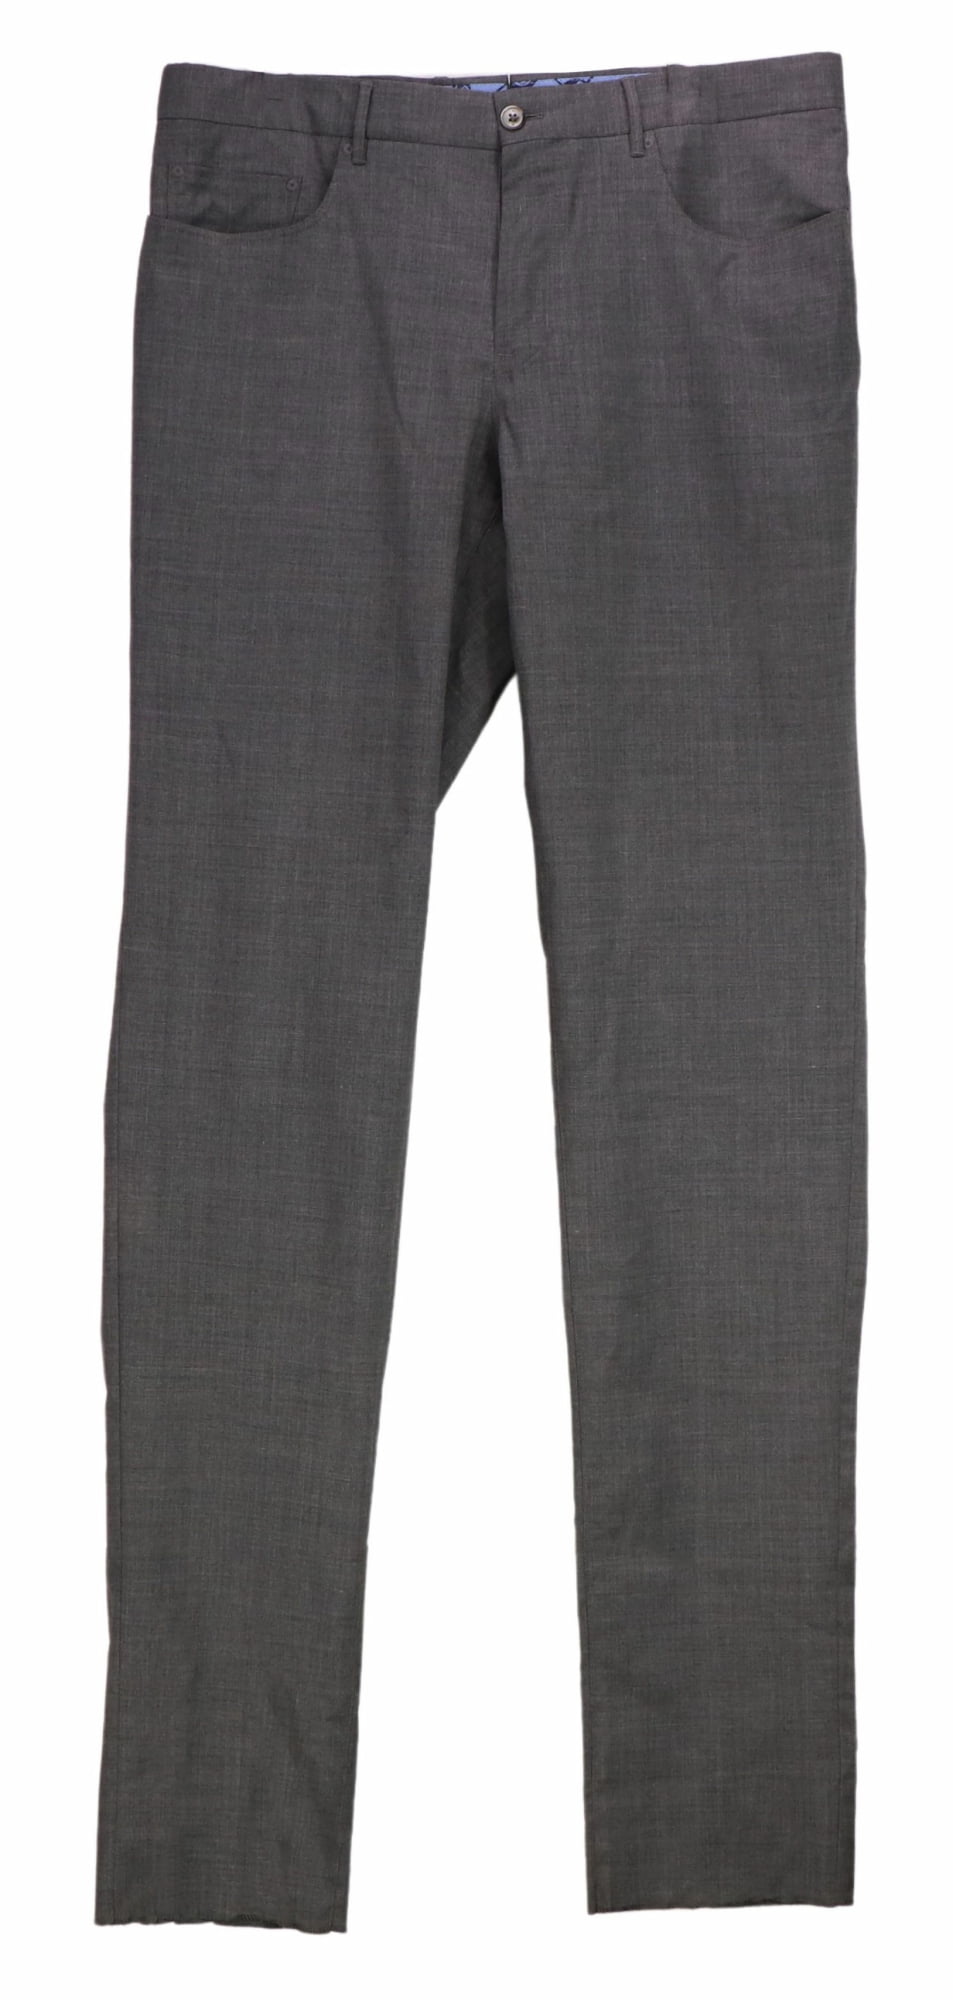 NWT MEN'S PT01 PANTALONI TORINO DRESS PANTS Multiple Sizes Slim Fit Stretch Tan 